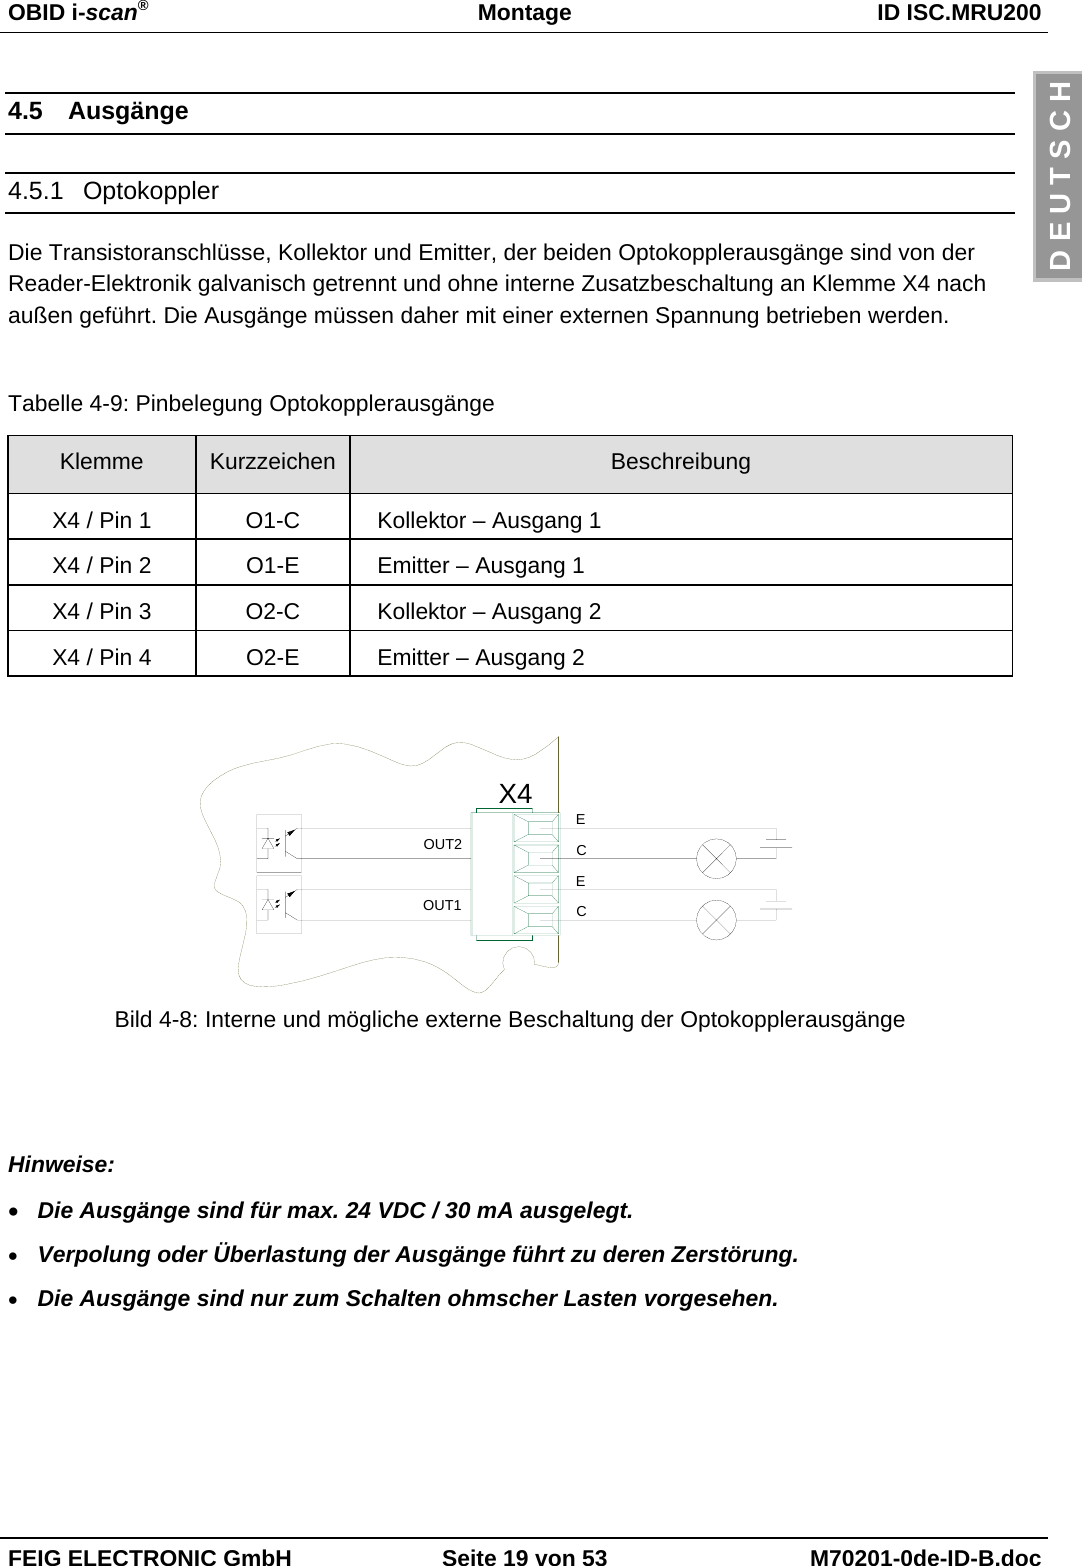 OBID i-scan®Montage ID ISC.MRU200FEIG ELECTRONIC GmbH Seite 19 von 53 M70201-0de-ID-B.docD E U T S C H4.5 Ausgänge4.5.1 OptokopplerDie Transistoranschlüsse, Kollektor und Emitter, der beiden Optokopplerausgänge sind von derReader-Elektronik galvanisch getrennt und ohne interne Zusatzbeschaltung an Klemme X4 nachaußen geführt. Die Ausgänge müssen daher mit einer externen Spannung betrieben werden.Tabelle 4-9: Pinbelegung OptokopplerausgängeKlemme Kurzzeichen BeschreibungX4 / Pin 1 O1-C Kollektor – Ausgang 1X4 / Pin 2 O1-E Emitter – Ausgang 1X4 / Pin 3 O2-C Kollektor – Ausgang 2X4 / Pin 4 O2-E Emitter – Ausgang 2Bild 4-8: Interne und mögliche externe Beschaltung der OptokopplerausgängeHinweise:• Die Ausgänge sind für max. 24 VDC / 30 mA ausgelegt.• Verpolung oder Überlastung der Ausgänge führt zu deren Zerstörung.• Die Ausgänge sind nur zum Schalten ohmscher Lasten vorgesehen.X4OUT2OUT1ECEC